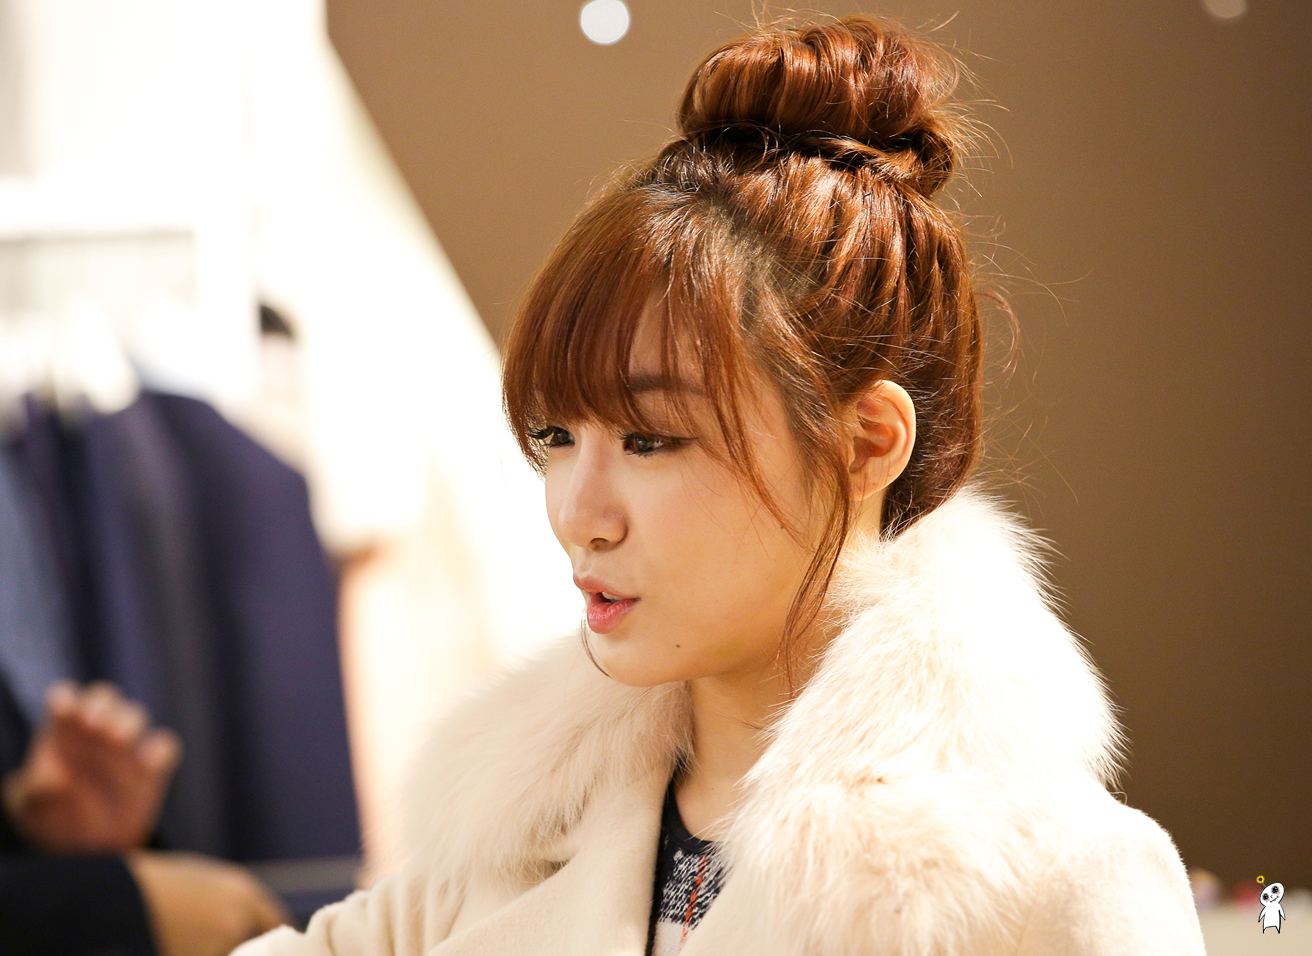 [PIC][28-11-2013]Tiffany ghé thăm cửa hàng "QUA" ở Hyundai Department Store vào trưa nay - Page 3 2743304152980C952BD703